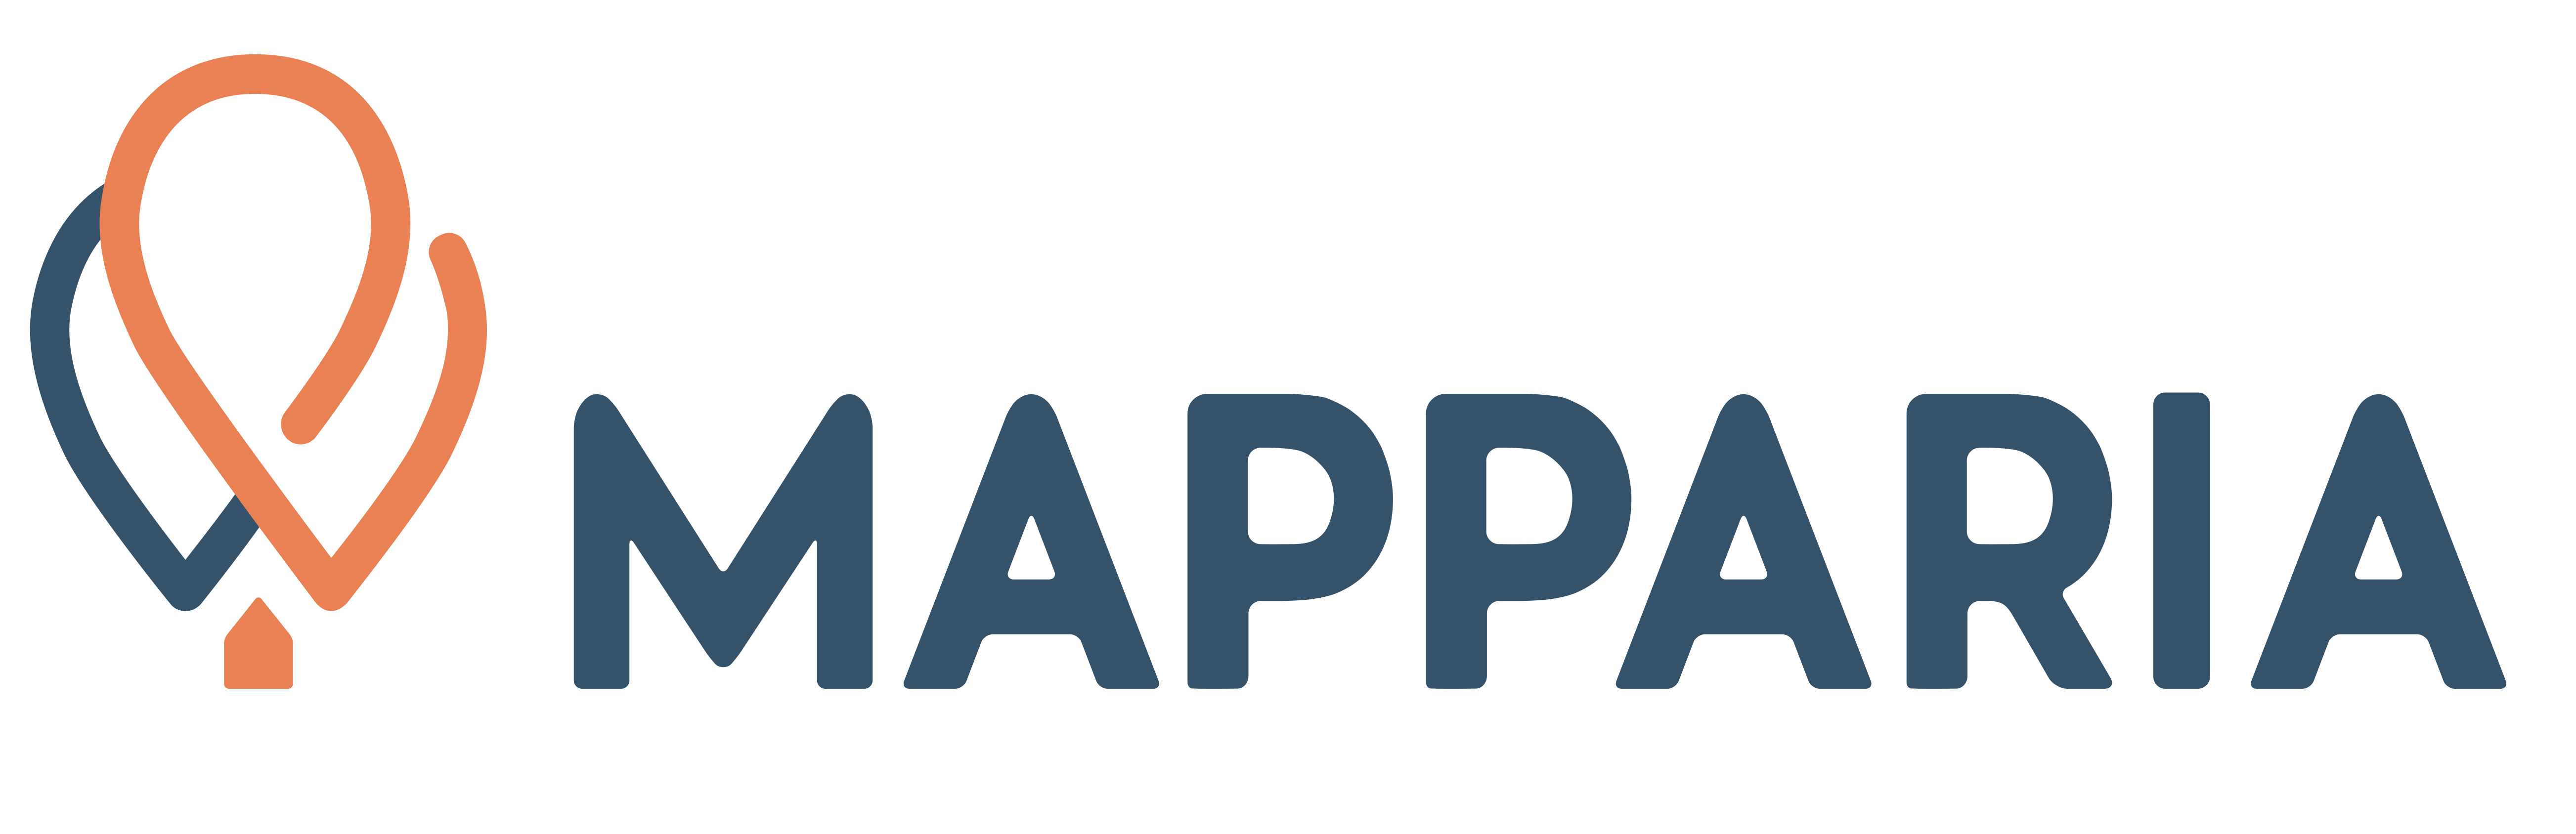 Mapparia